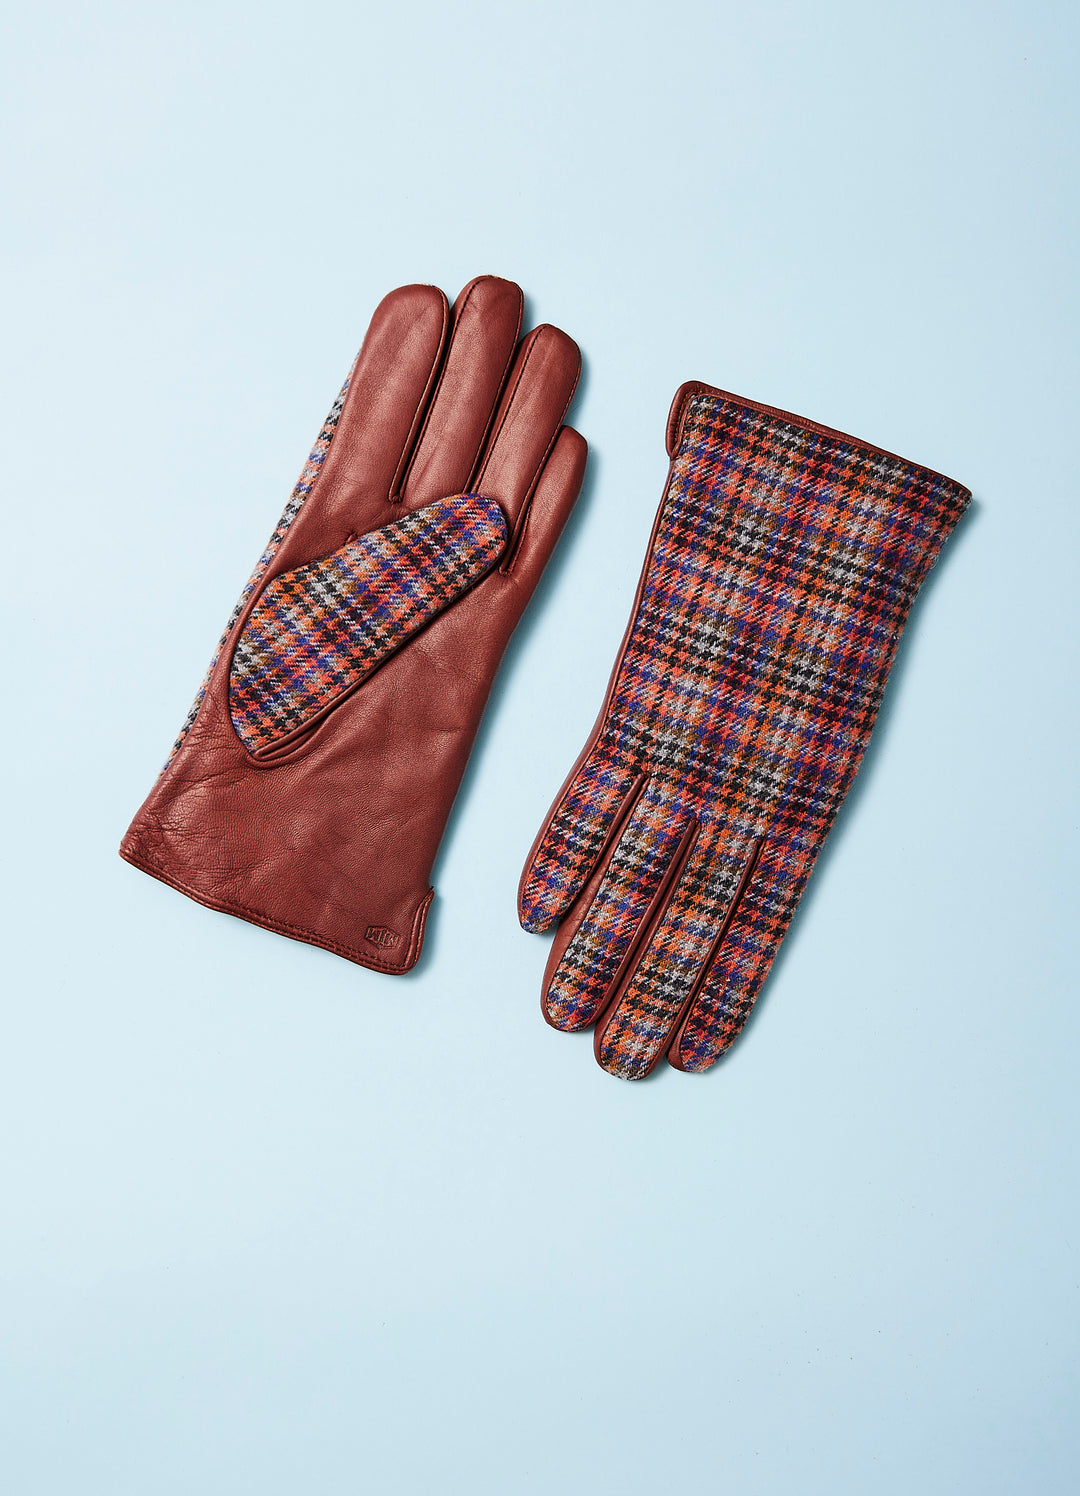 Merla - Gloves in Lambskin - Brown with tweed